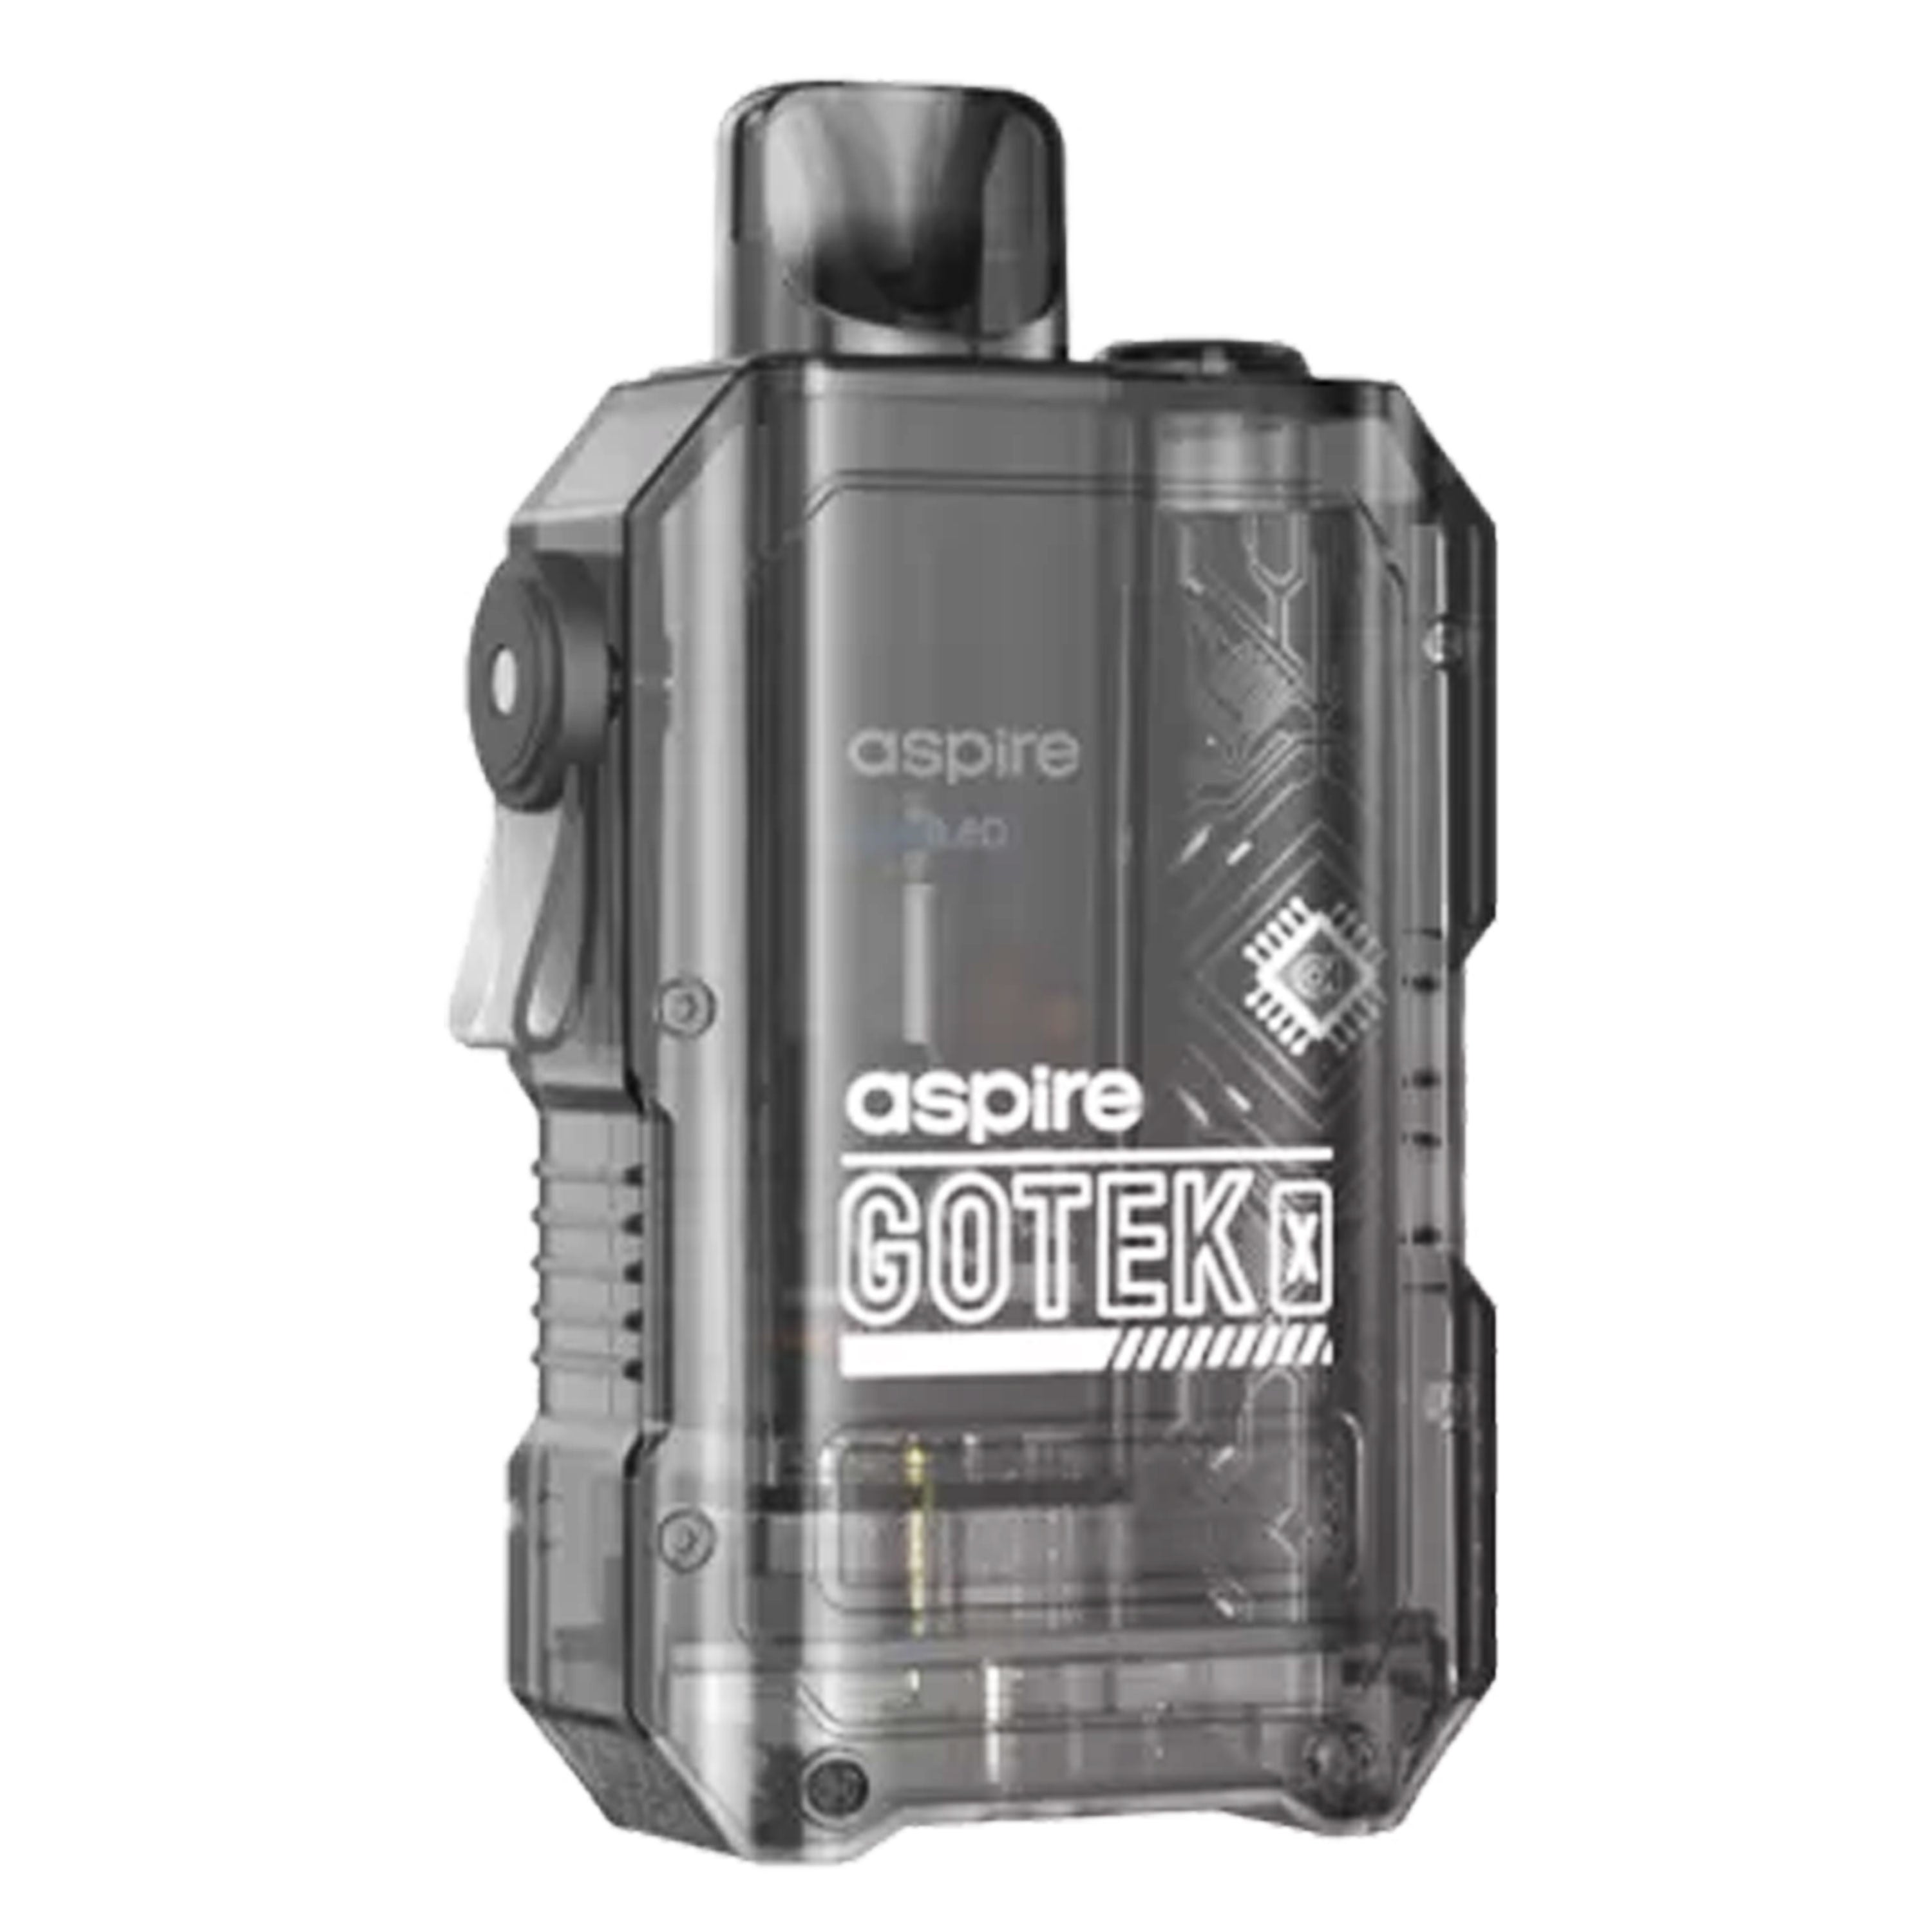 Aspire - Gotek X Kit (4.5 ml) 650 mAh - E-Zigarette